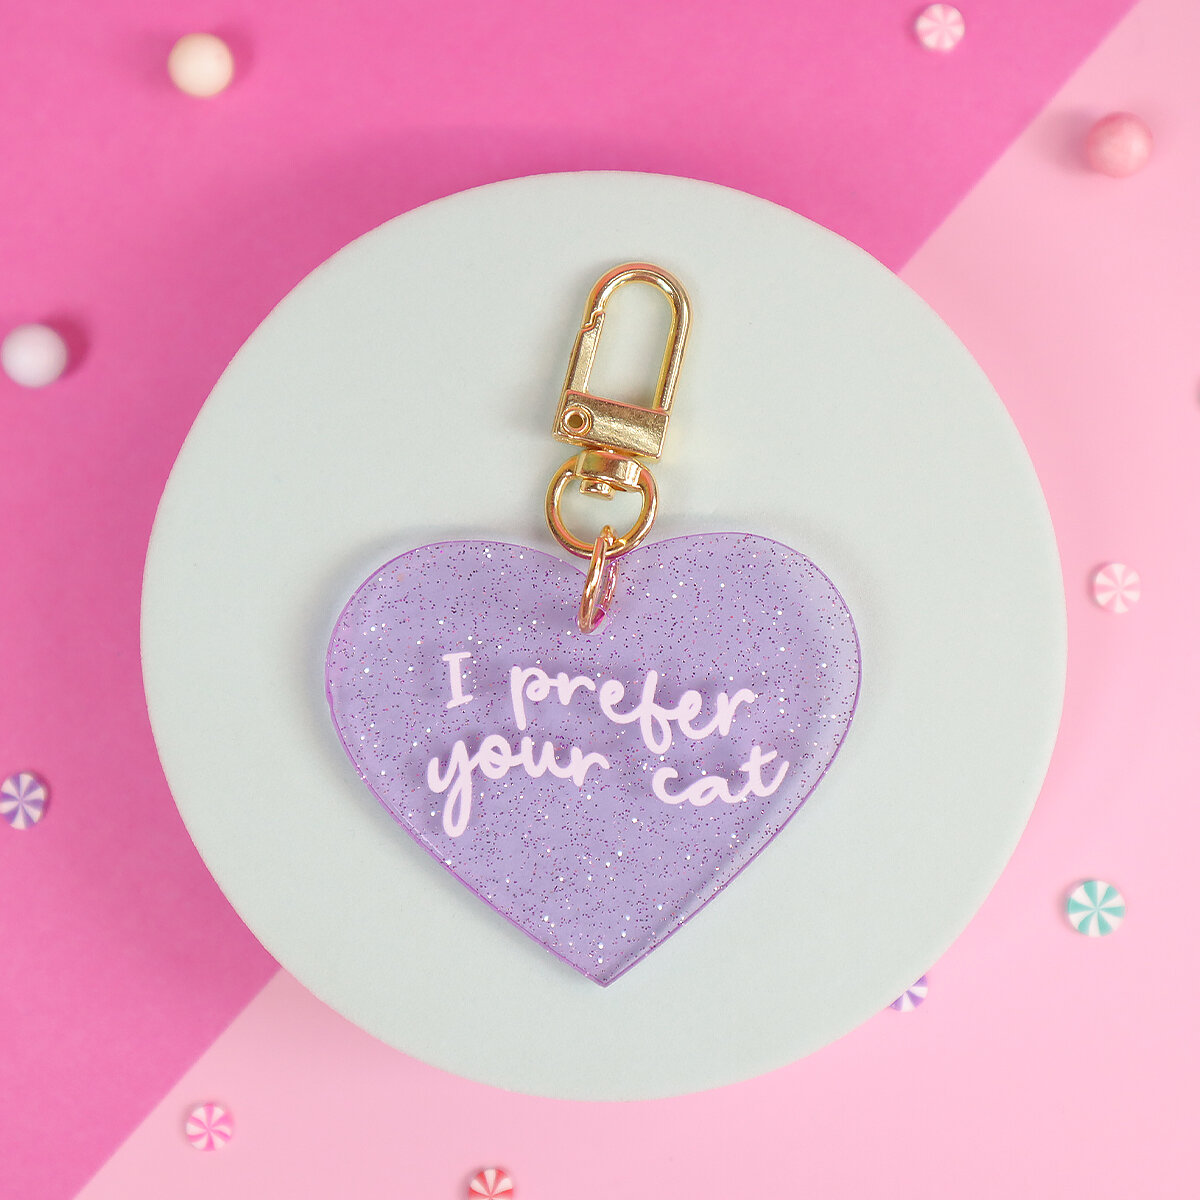 Glitter heart key ring - Prefer your cat